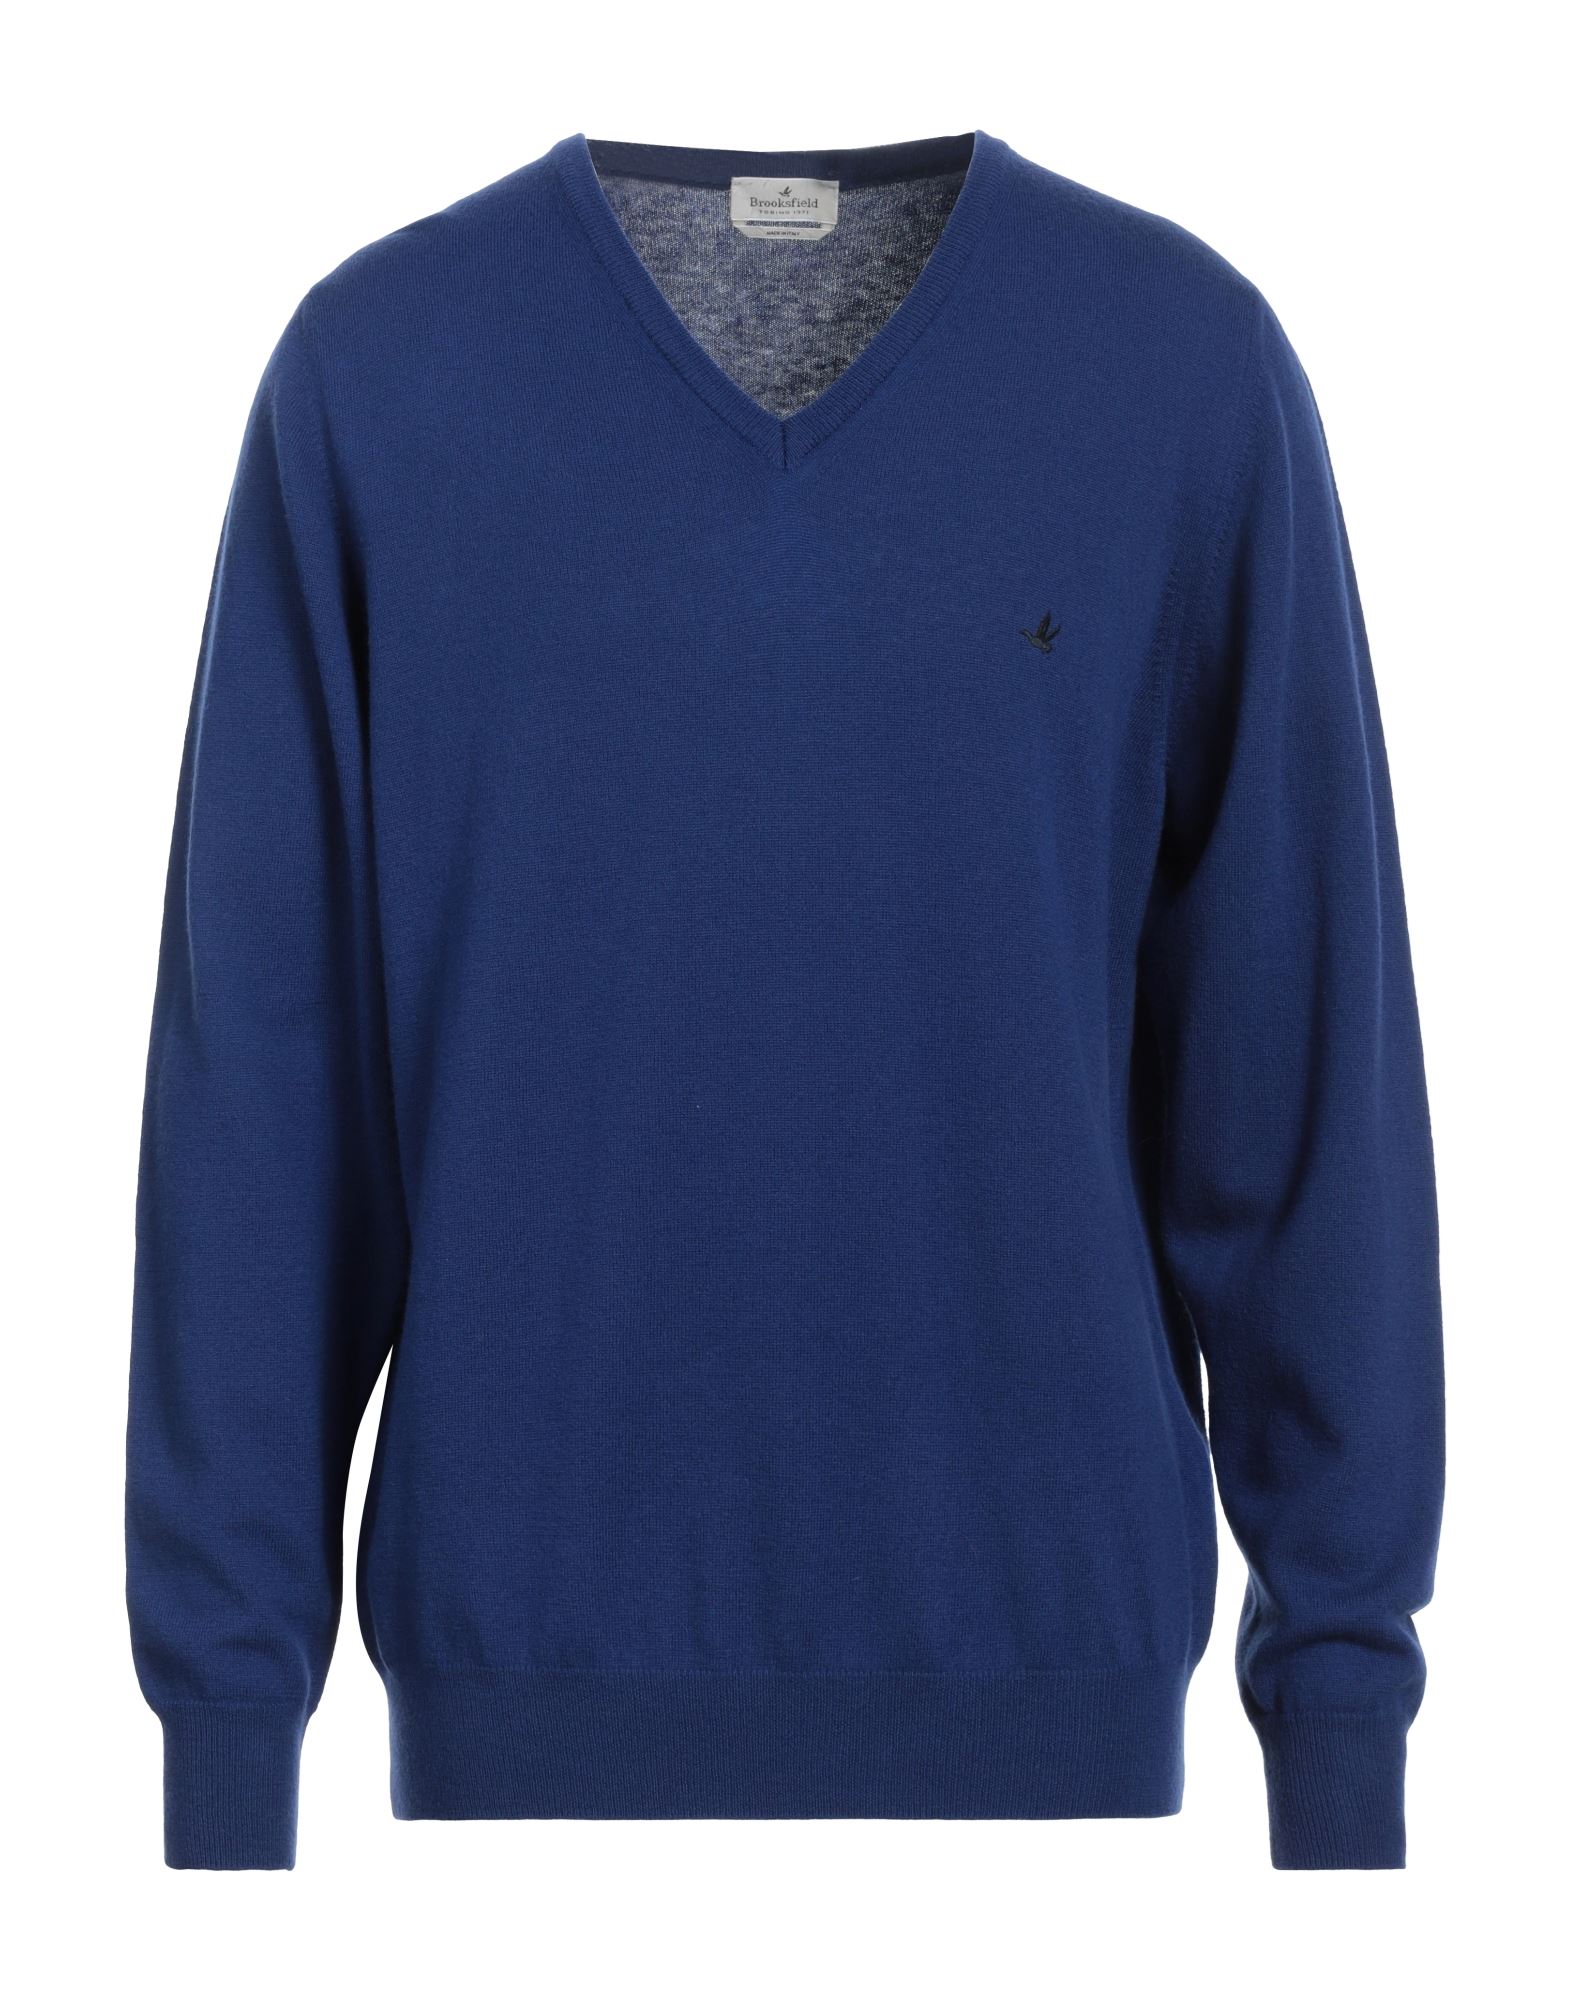 Brooksfield Sweaters In Navy Blue